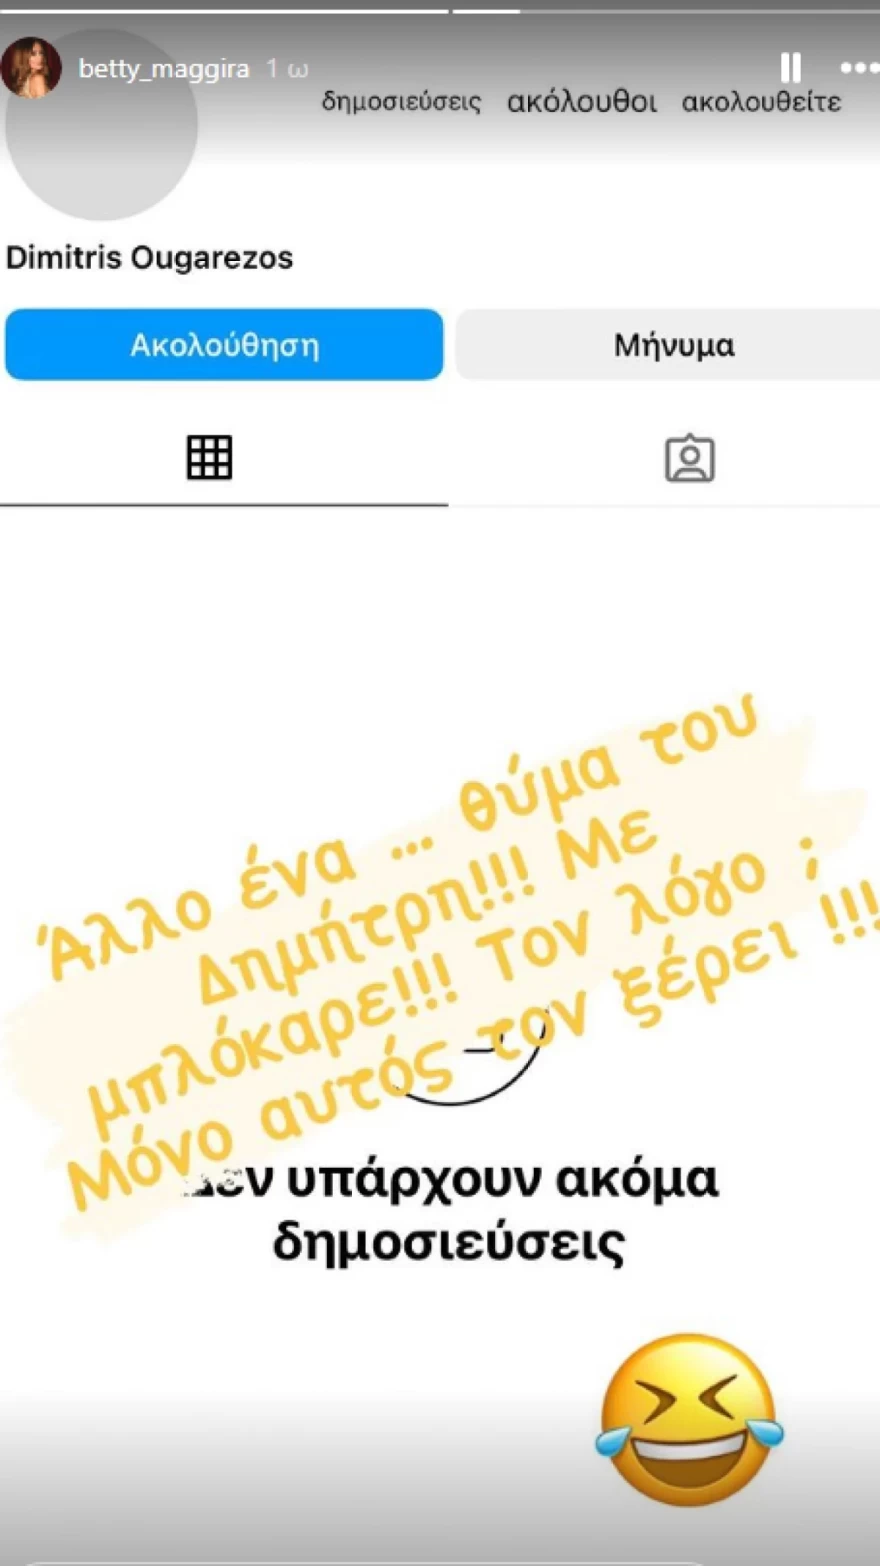 Μαγγίρα - Ουγγαρέζος - Block - Instagram